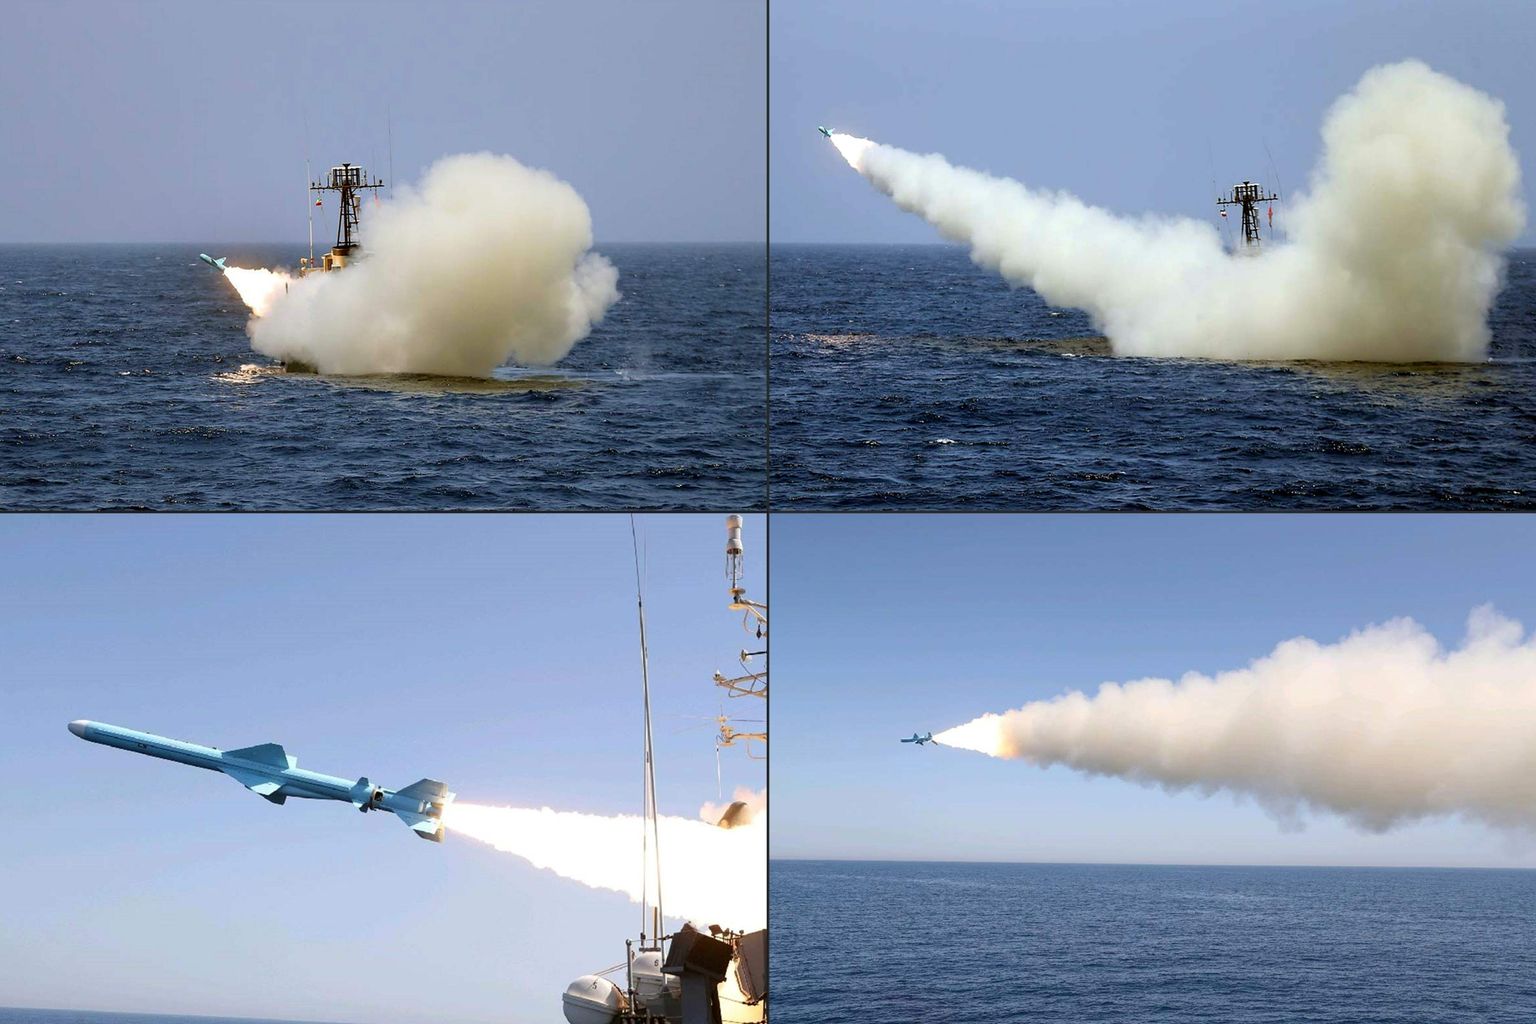 Iraani sõjalaev raketti välja tulistamas. Foto on illustratiivne.